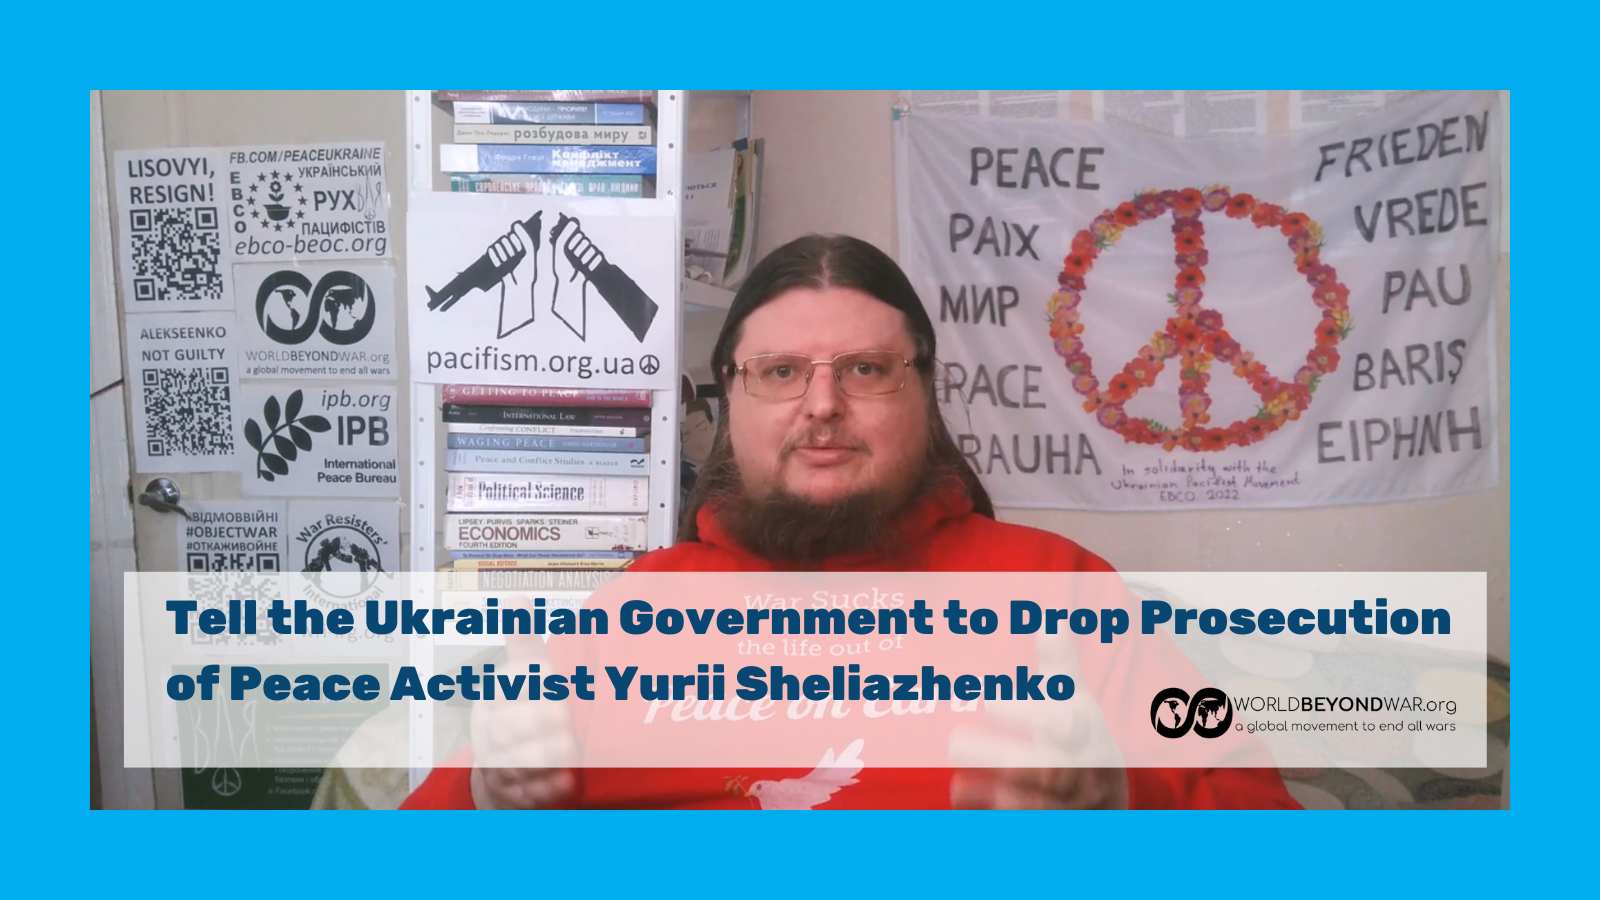 Solidarity with Yurii Sheliazhenko!